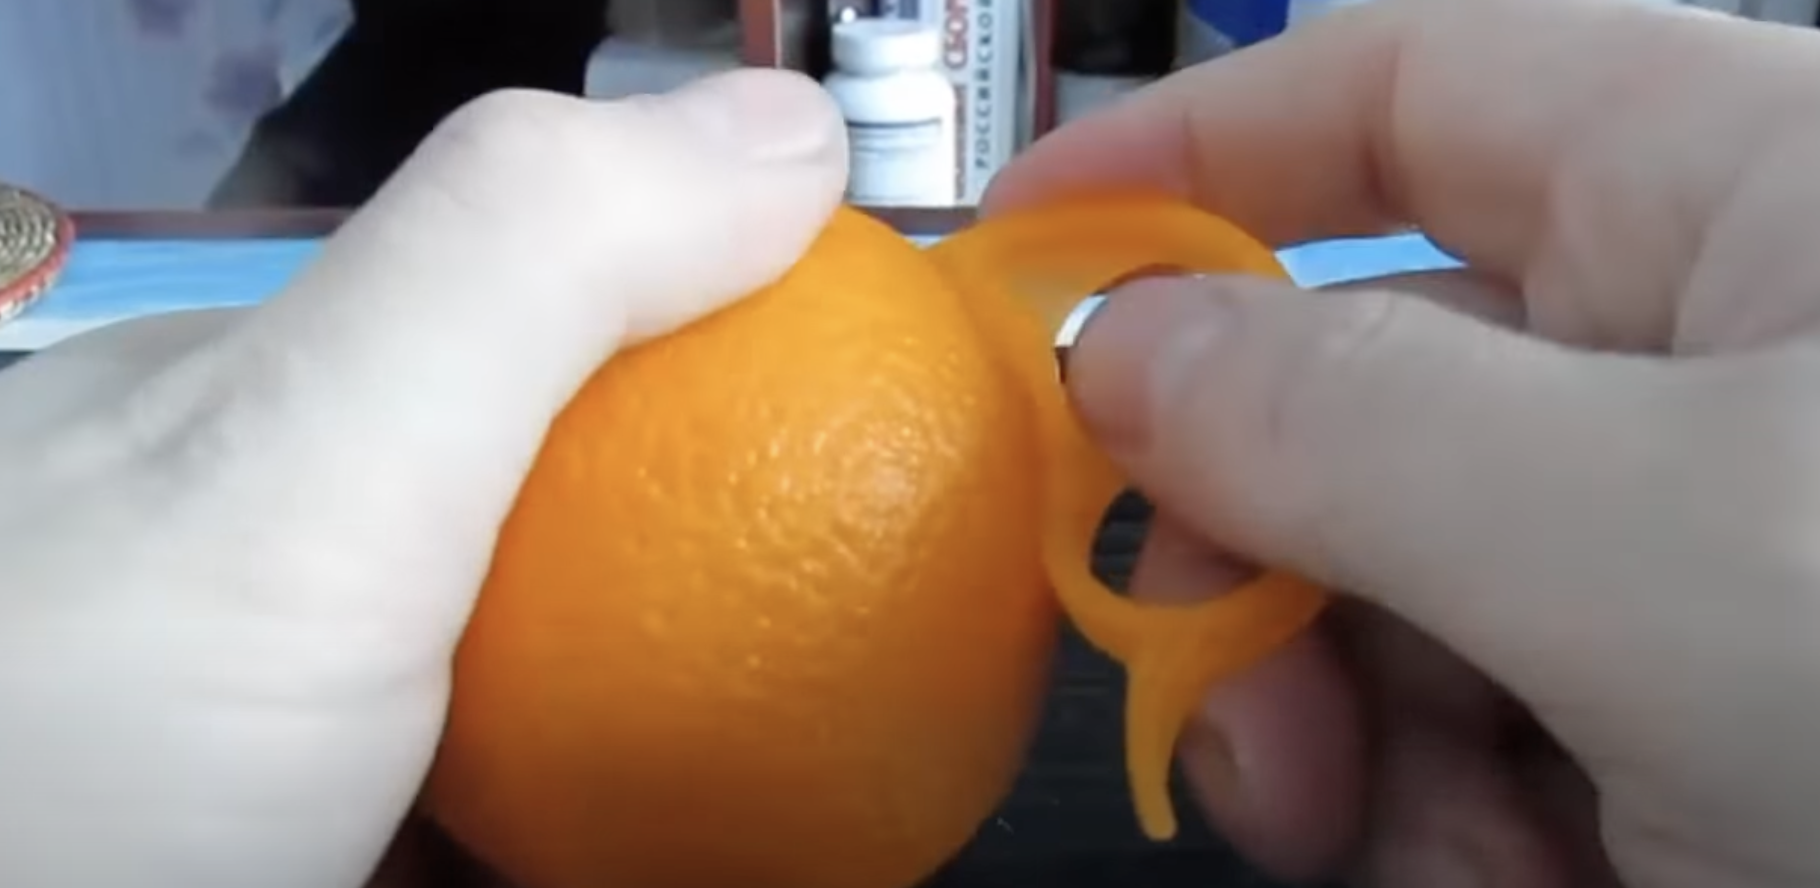 Eine Person benutzt einen Orangenschäler | Quelle: youtube.com/@zetira4582